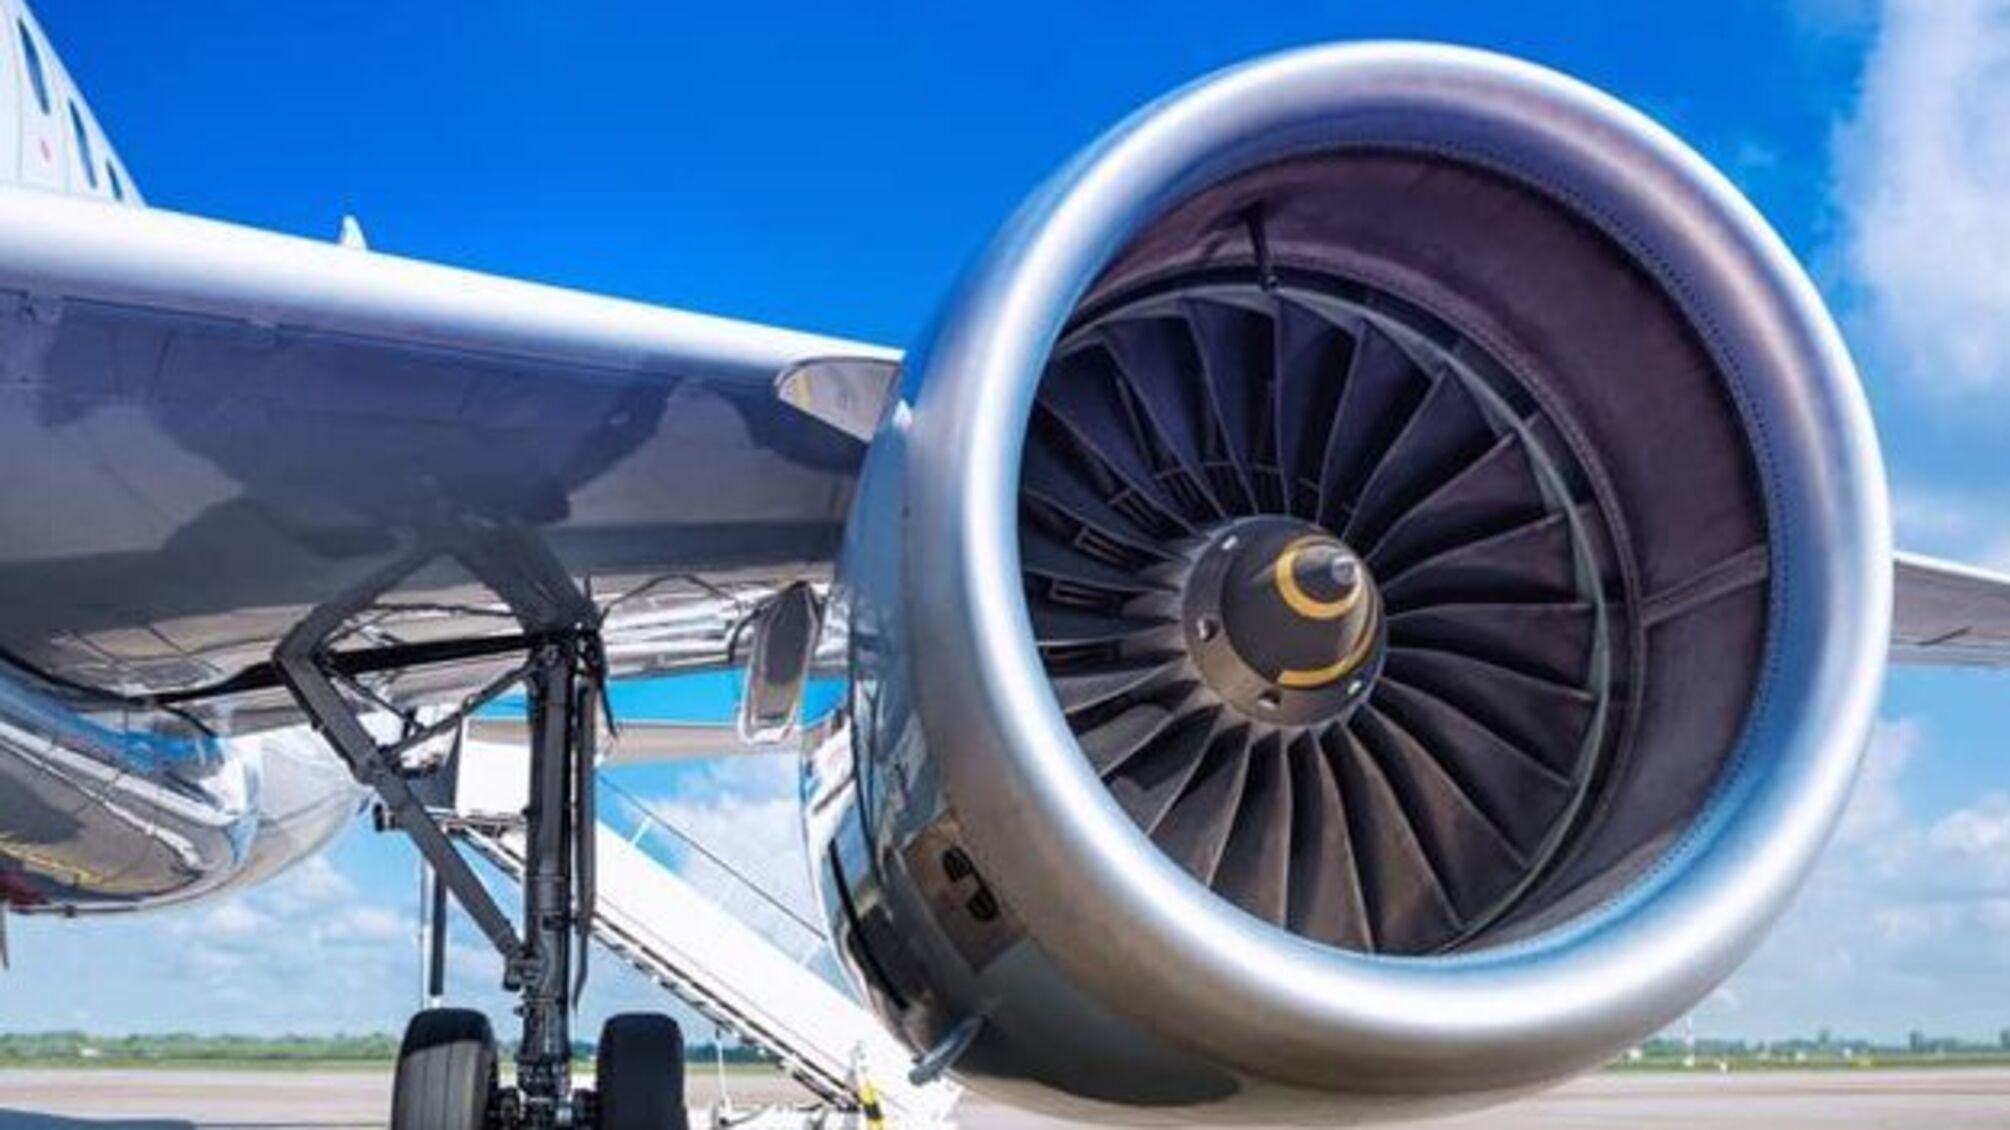 Світові авіакомпанії домовилися до 2050 року звести викиди вуглецю до нуля